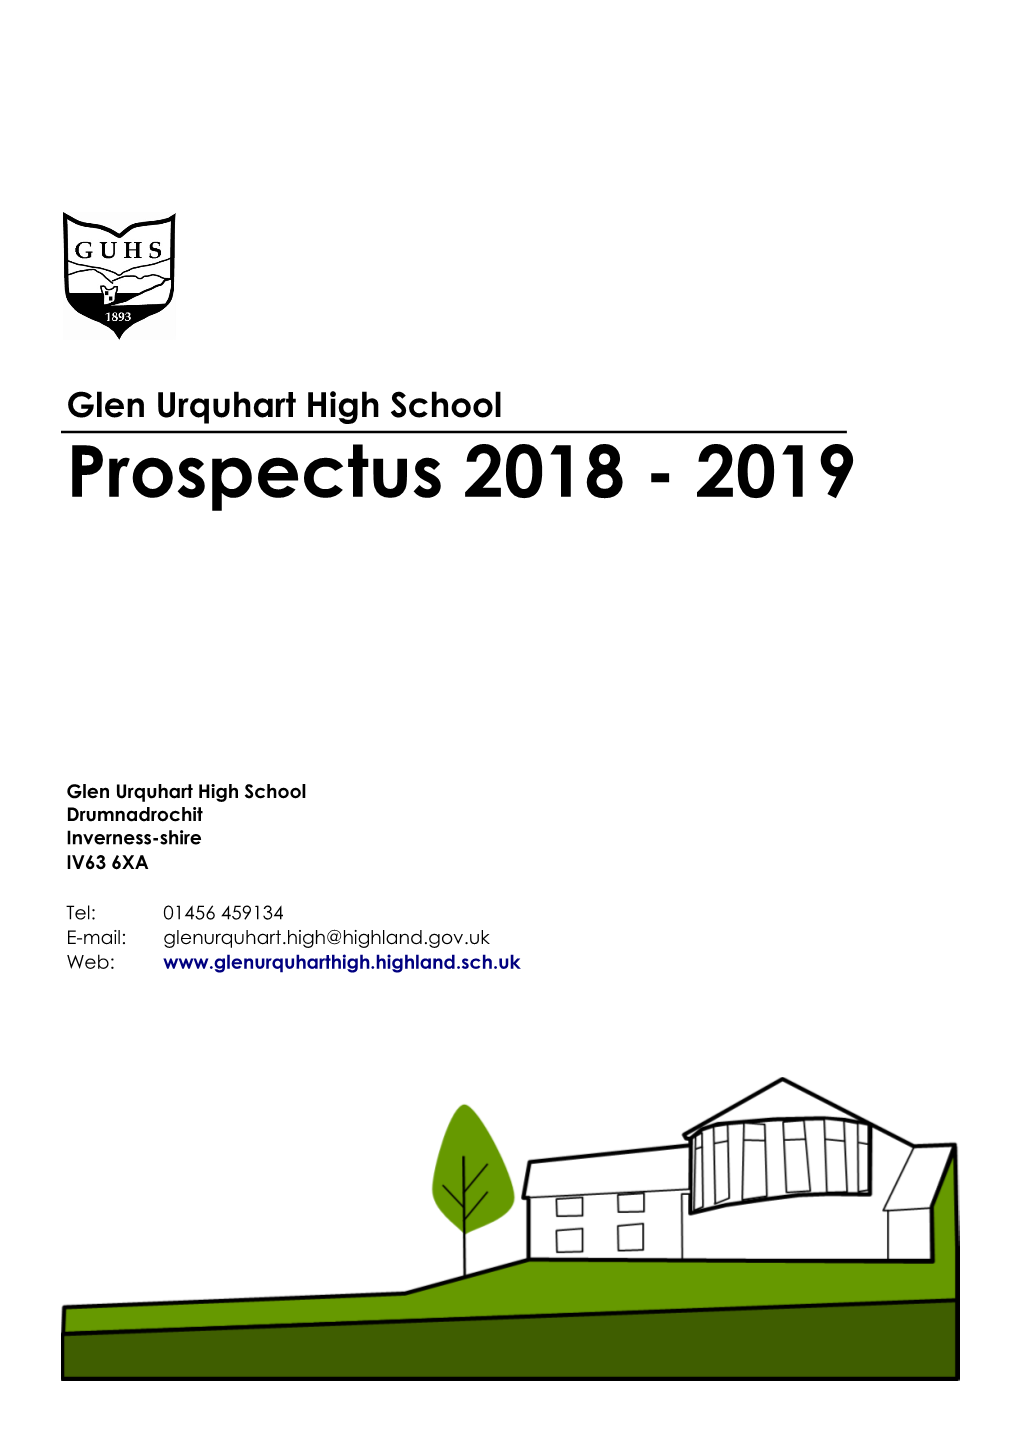 Glen Urquhart High School Prospectus 2018 - 2019